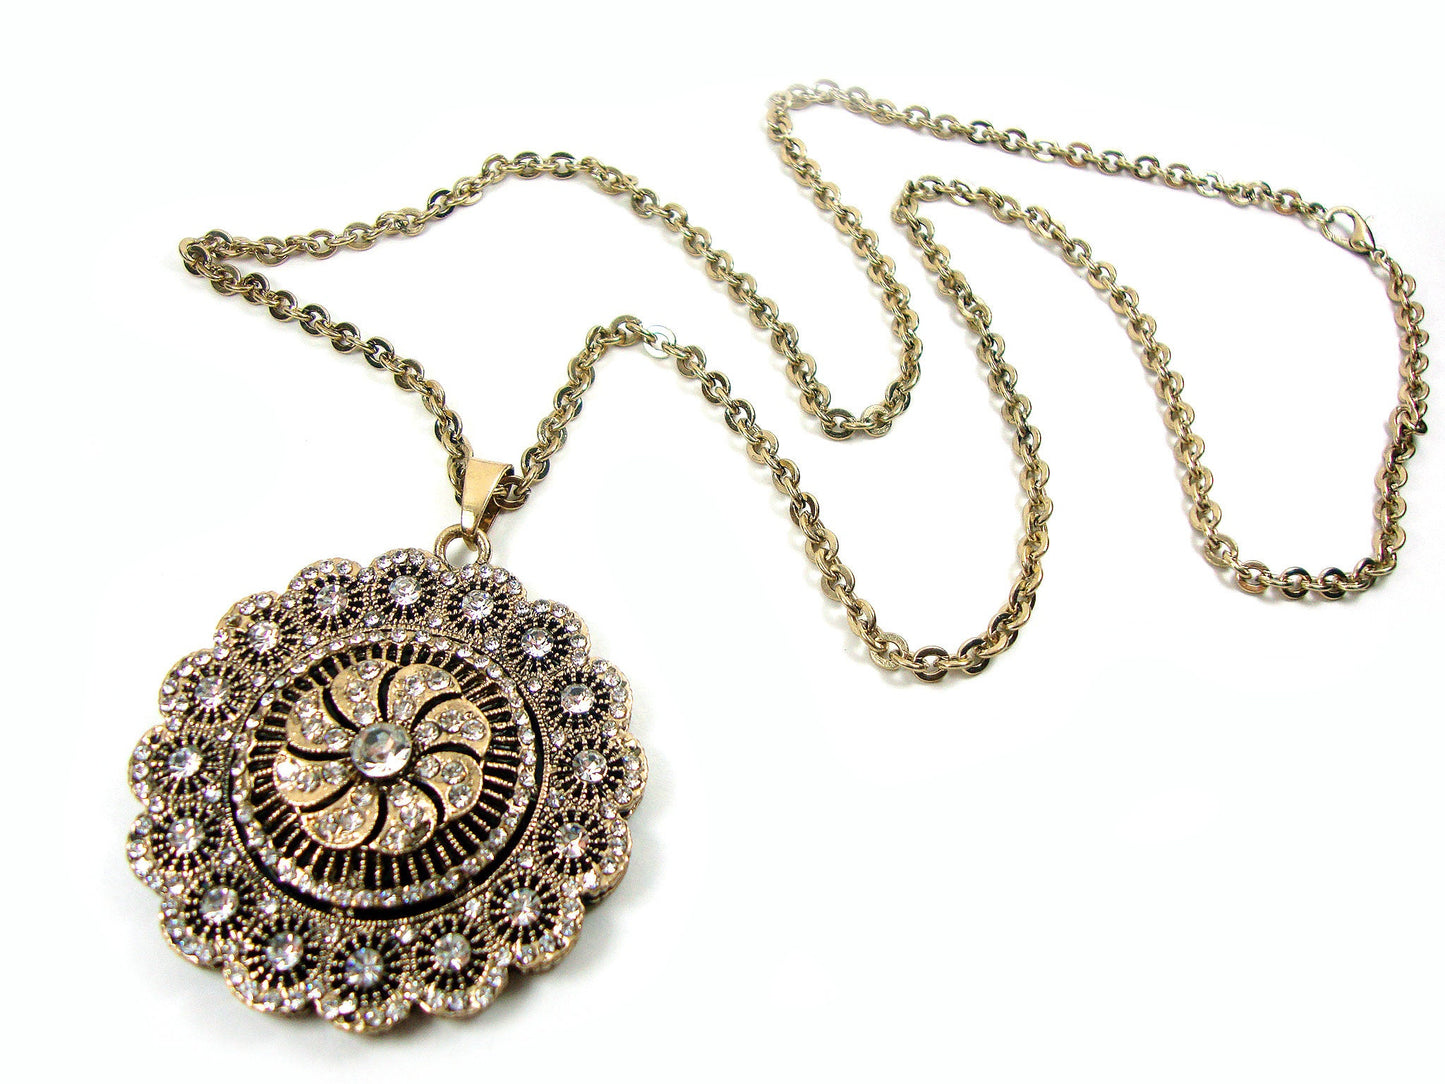 Pendentif chaîne byzantine moderne ronde grosses pierres de cristal 50mm, pendentif ethnique, bijoux traditionnels turcs antiques, collier long en cristal